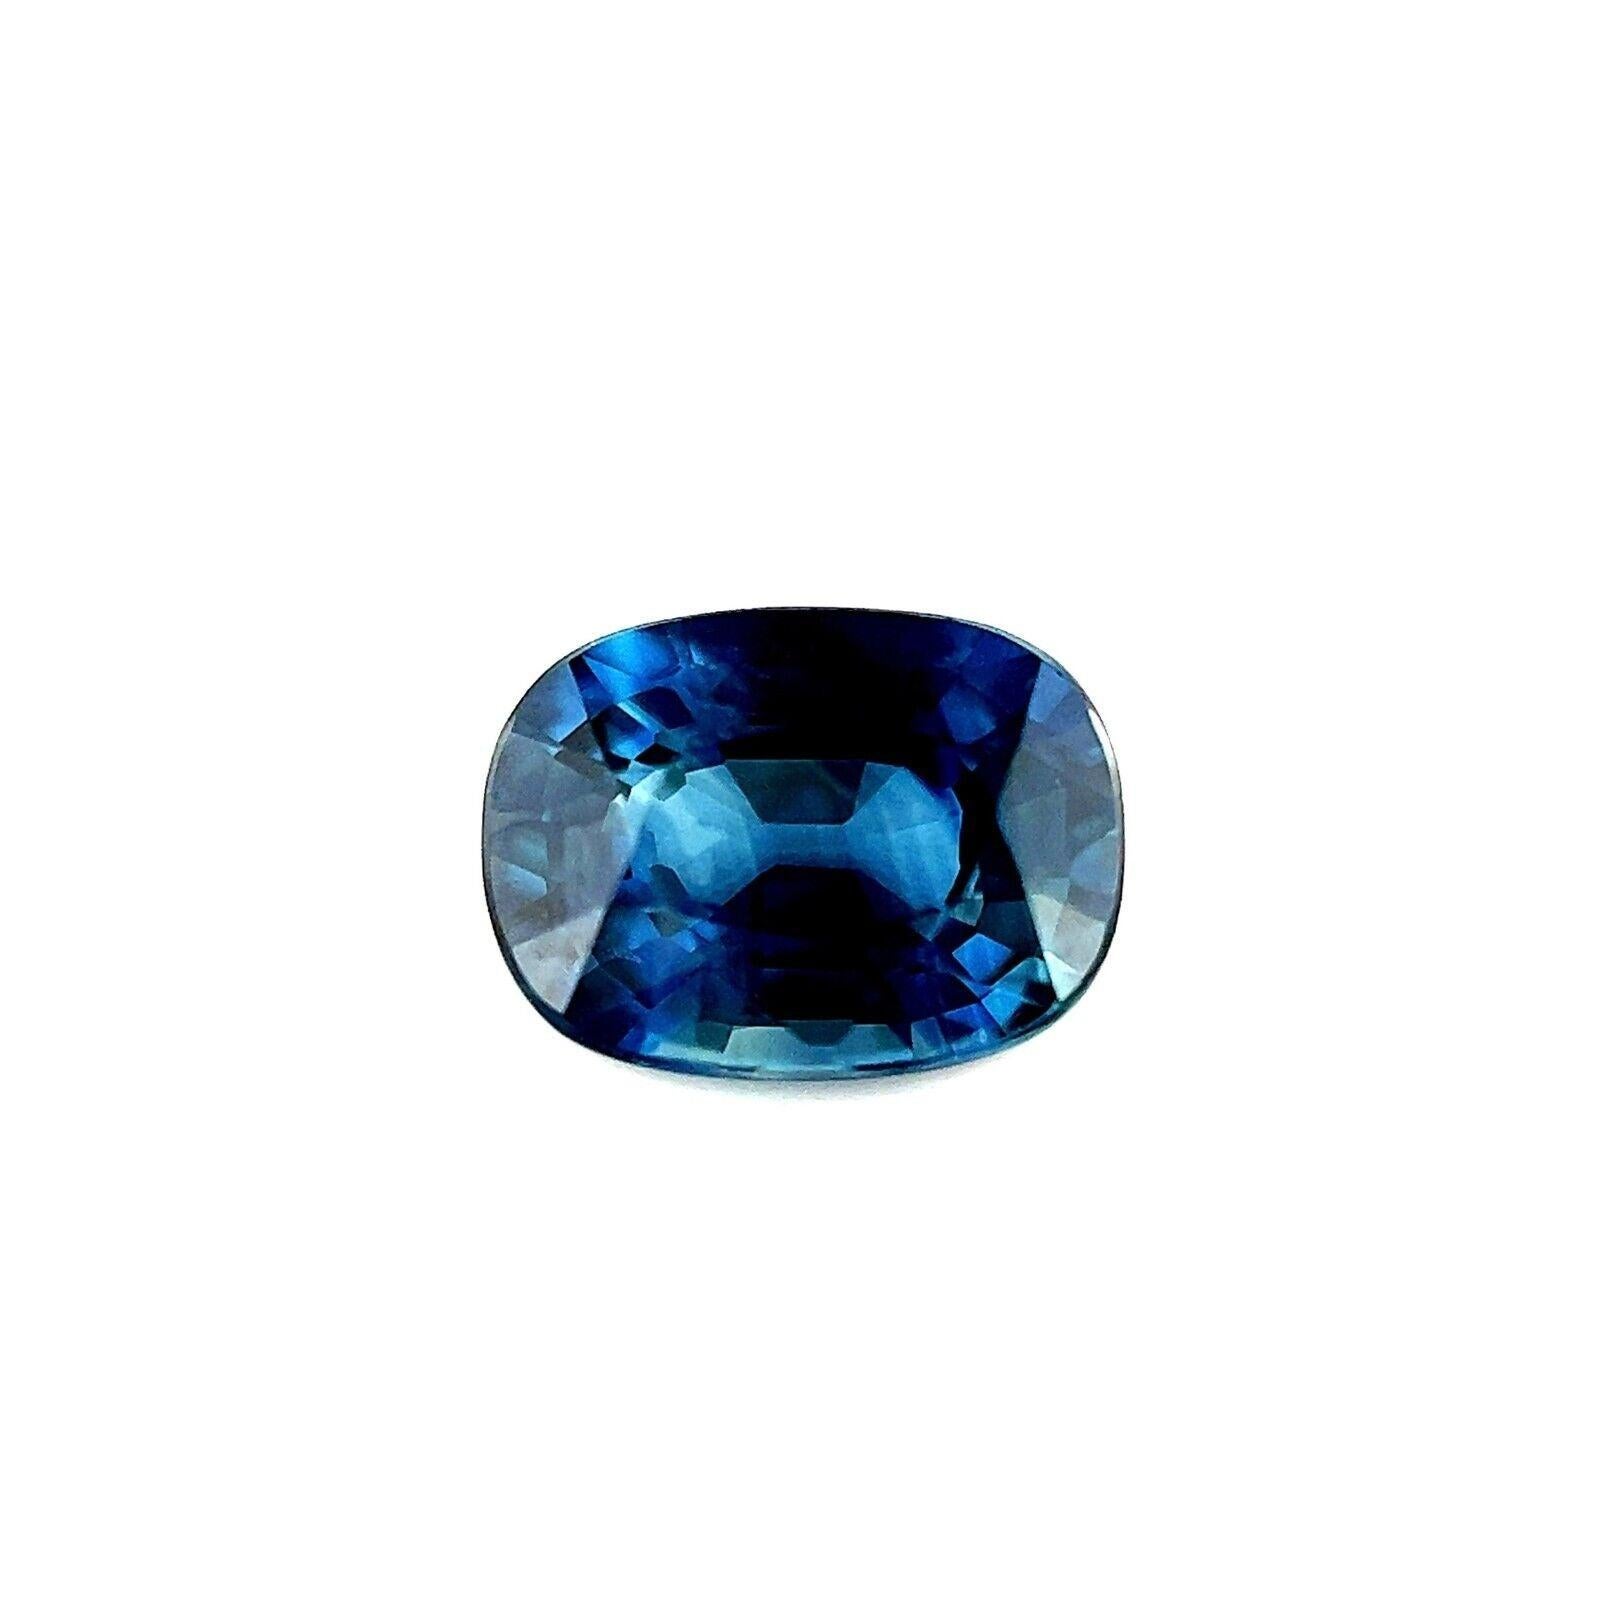 Natürlicher Grüner Blauer Teal Saphir 0.87ct Australischer Kissenschliff Edelstein 6.3x4.6mm

Natürlicher Australischer Blauer Saphir Edelstein.
0.87 Karat mit blauer Farbe und ausgezeichneter Reinheit, praktisch makellos.
Außerdem hat er einen